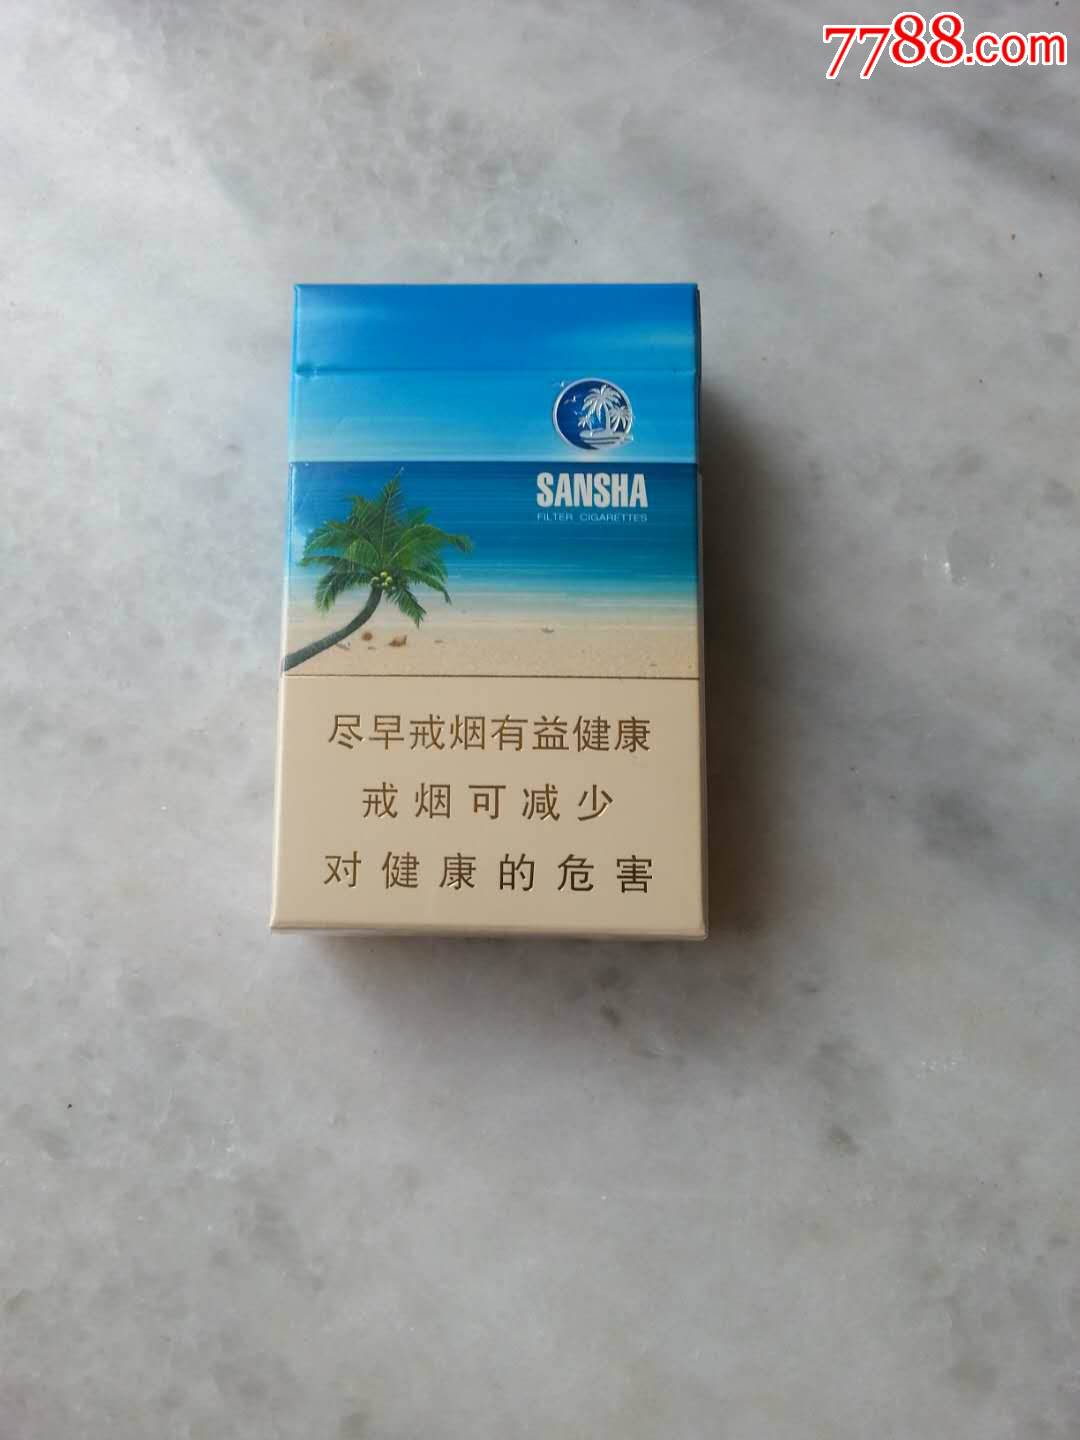 宝岛三沙-价格:3.0000元-se60080112-烟标/烟盒-零售